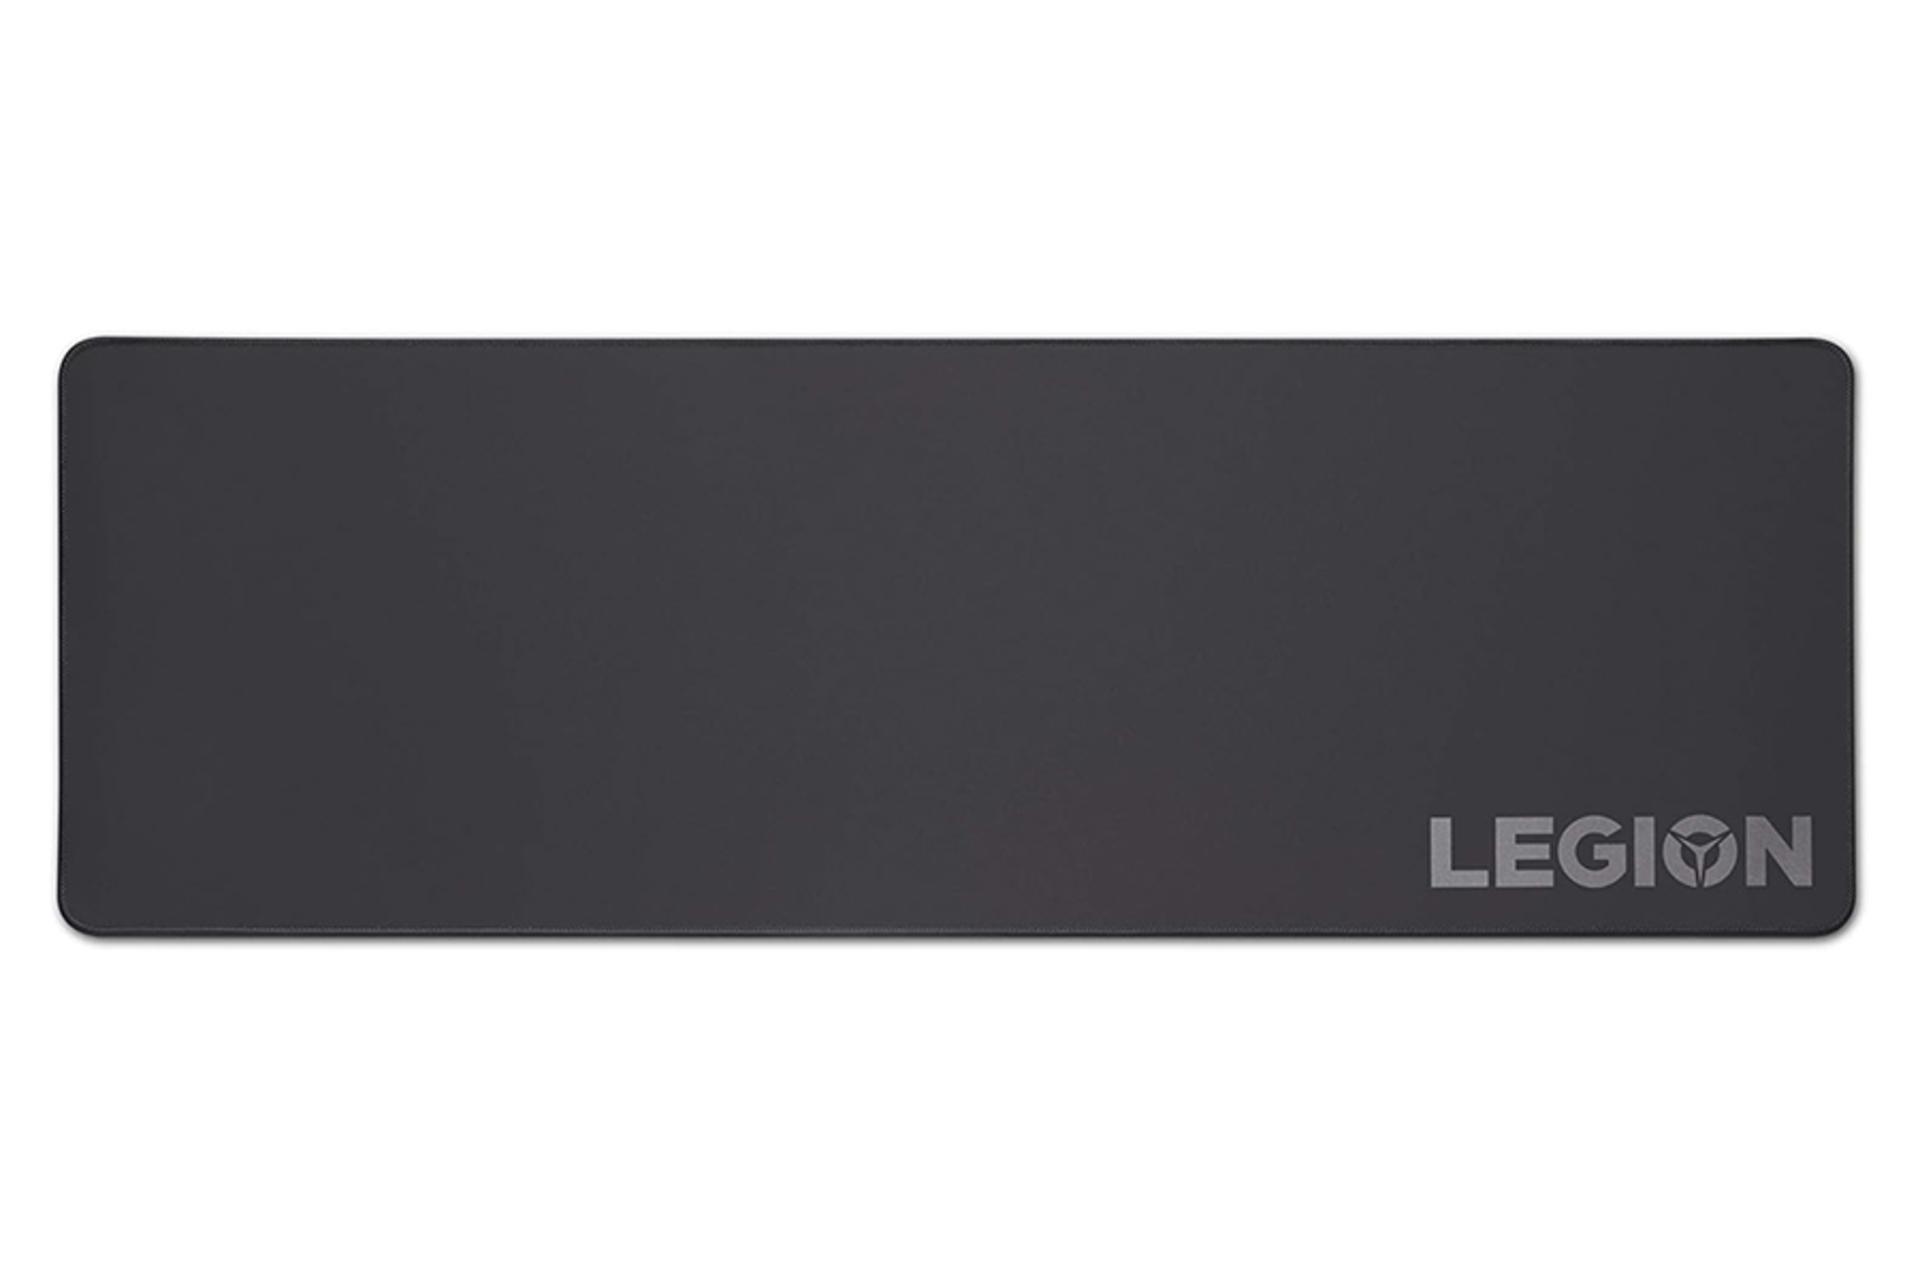 ماوس پد لنوو Lenovo Legion XL نمای بالا